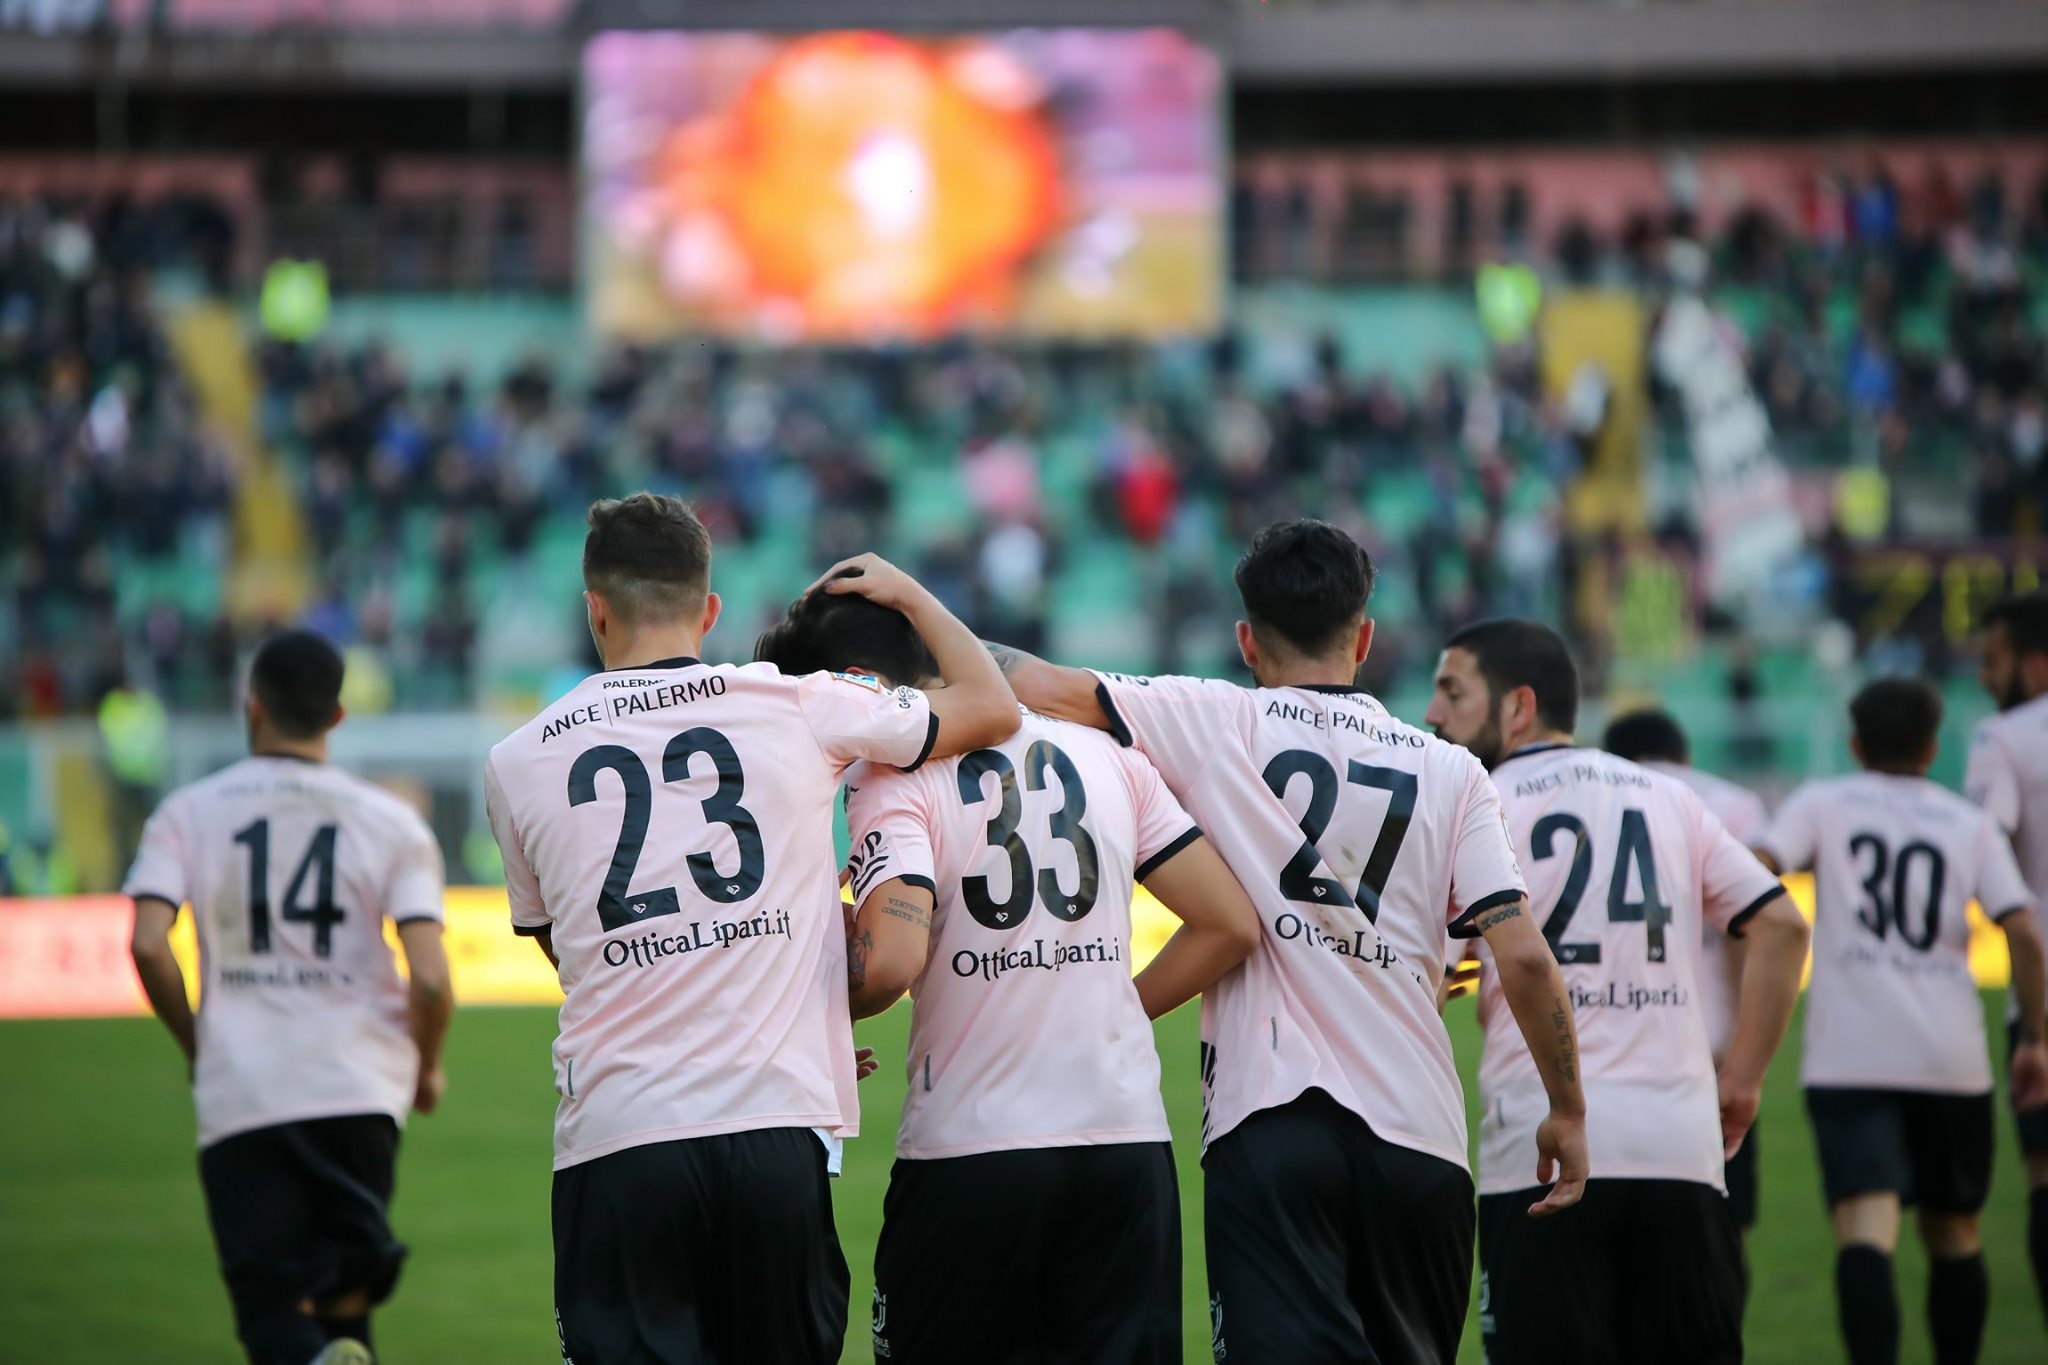 Il Palermo ha devoluto in beneficenza 50mila euro dopo la promozione in Serie C